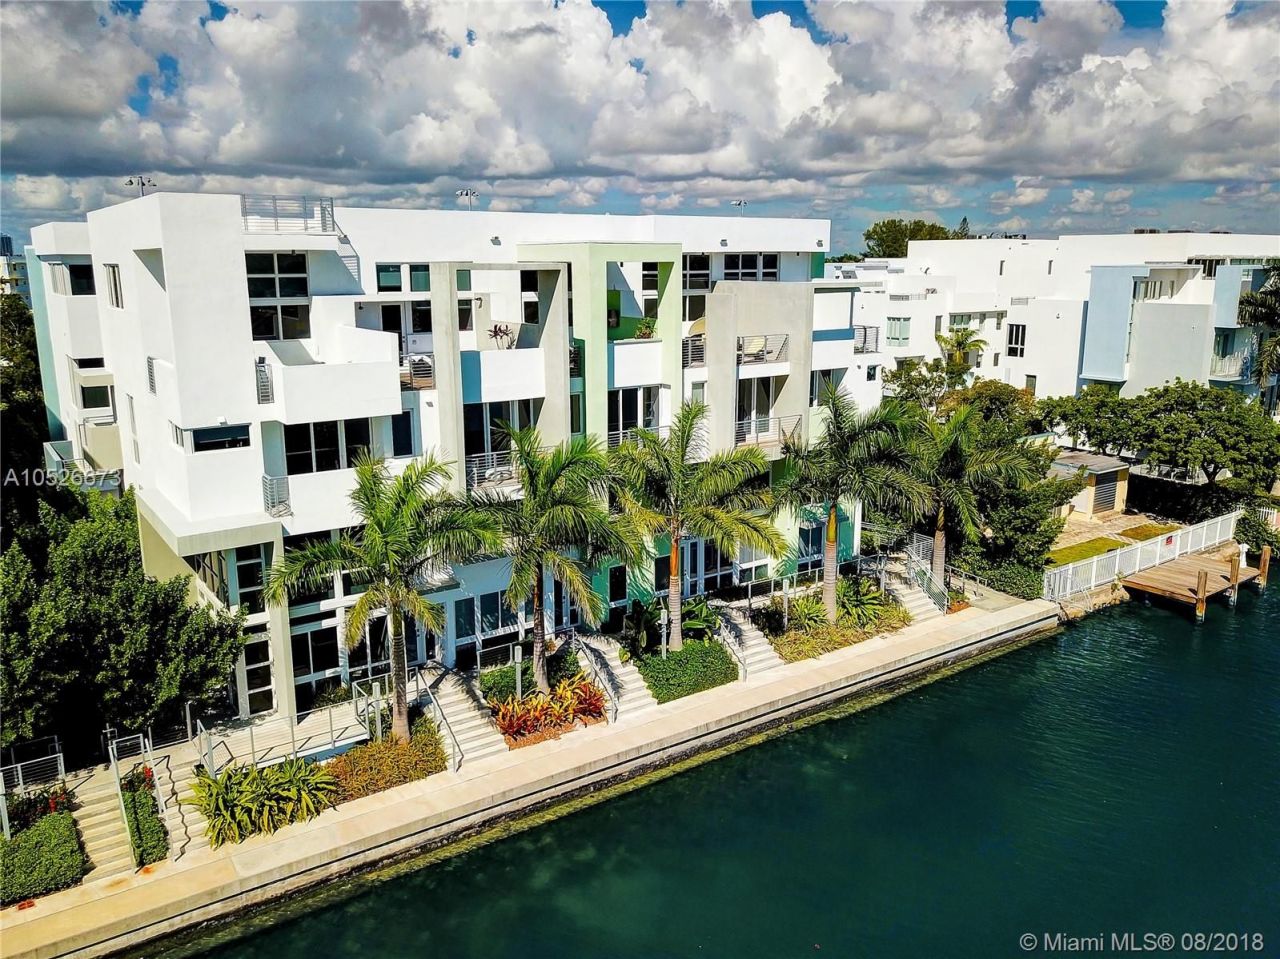 Townhouse in Miami, USA, 240 sq.m - picture 1